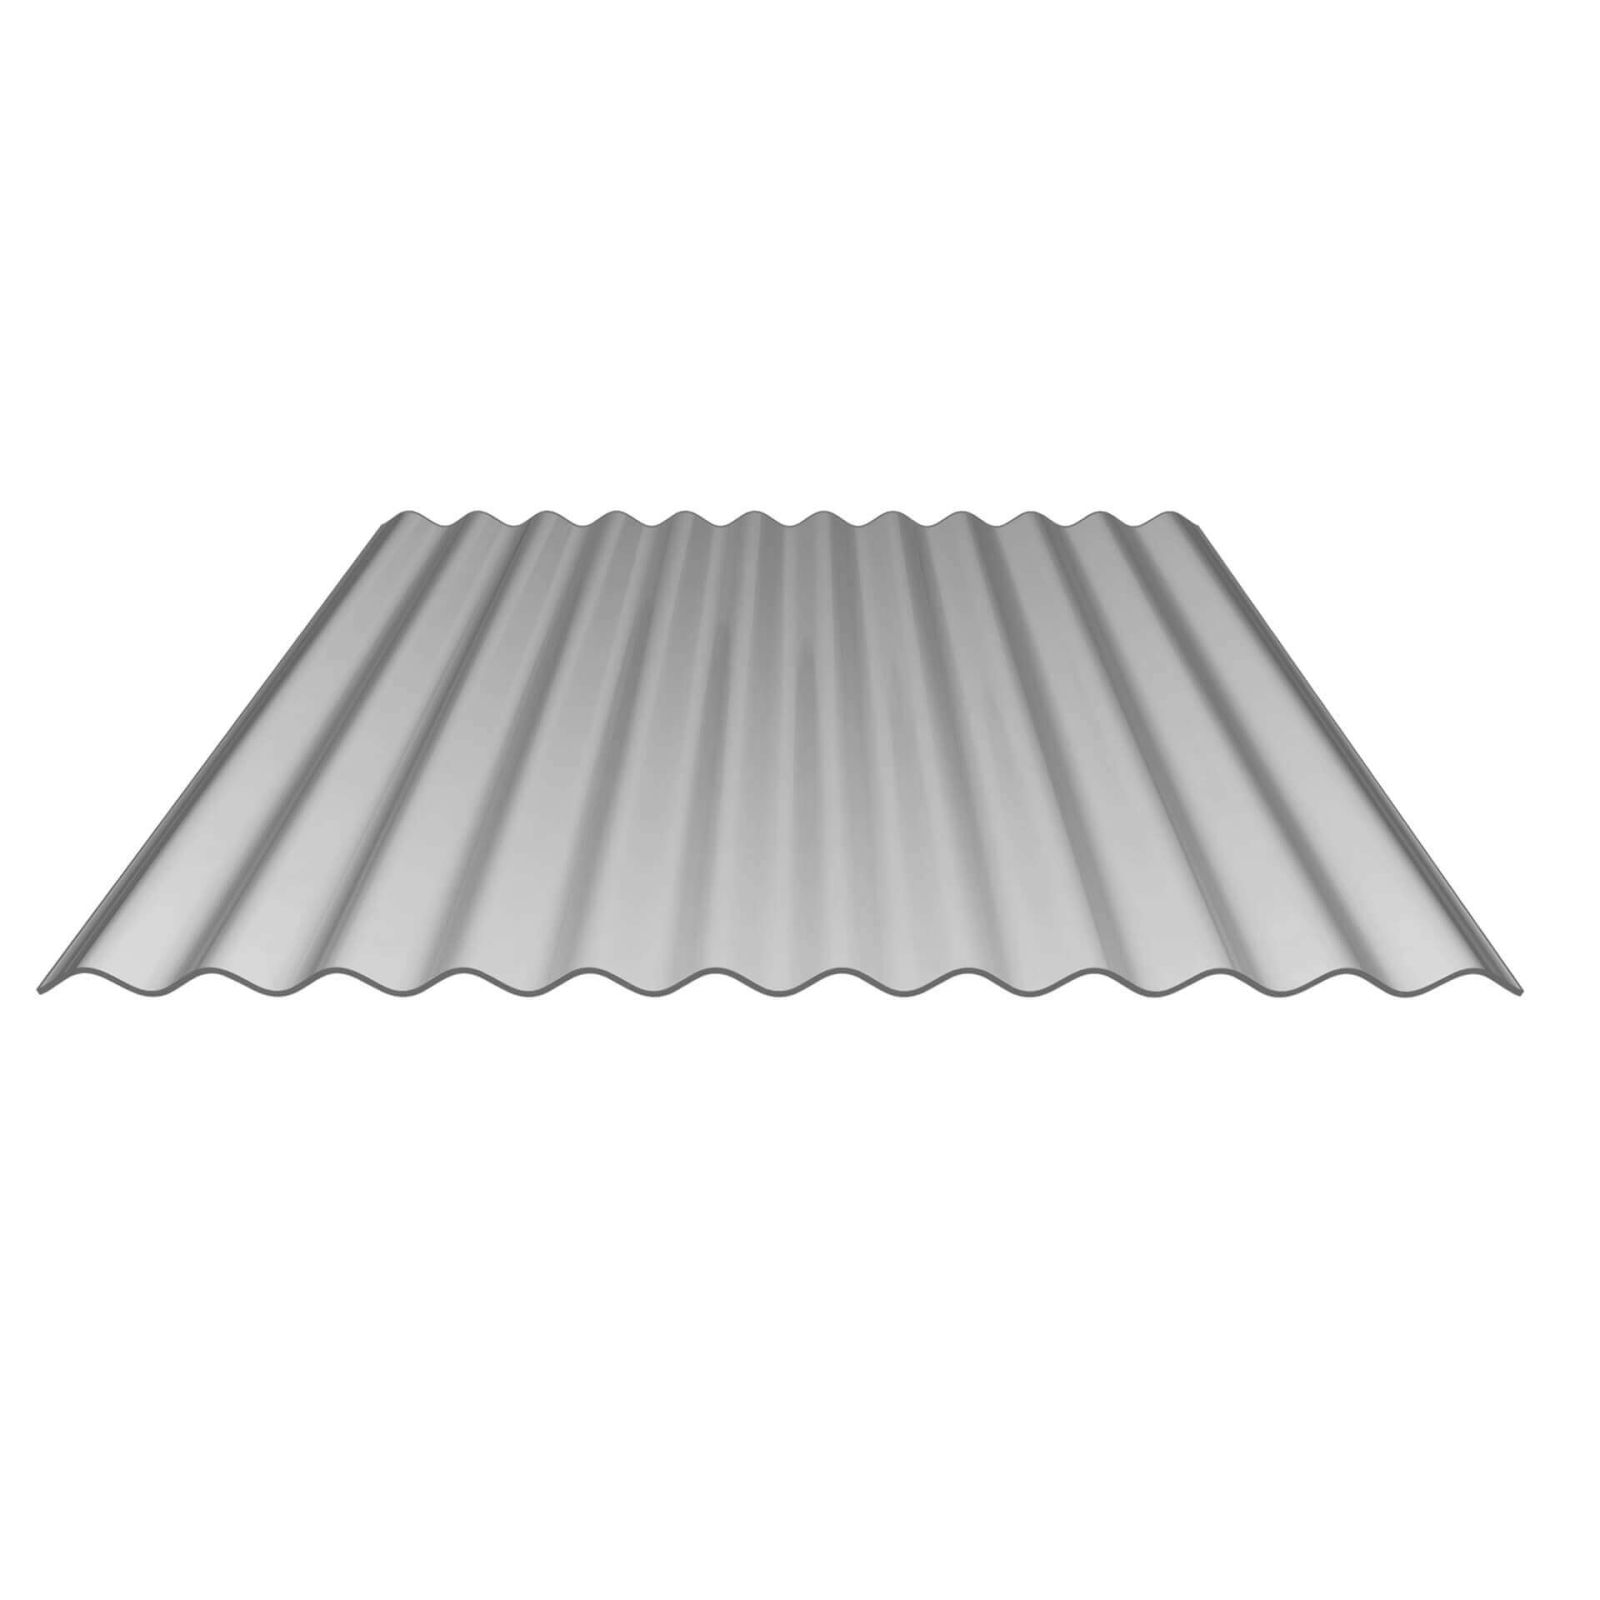 Polycarbonat Wellplatte | 76/18 | 1,1 mm | Silbermetallic | 2-Seiten UV-Schutz | Temperaturreduzierend | 500 mm